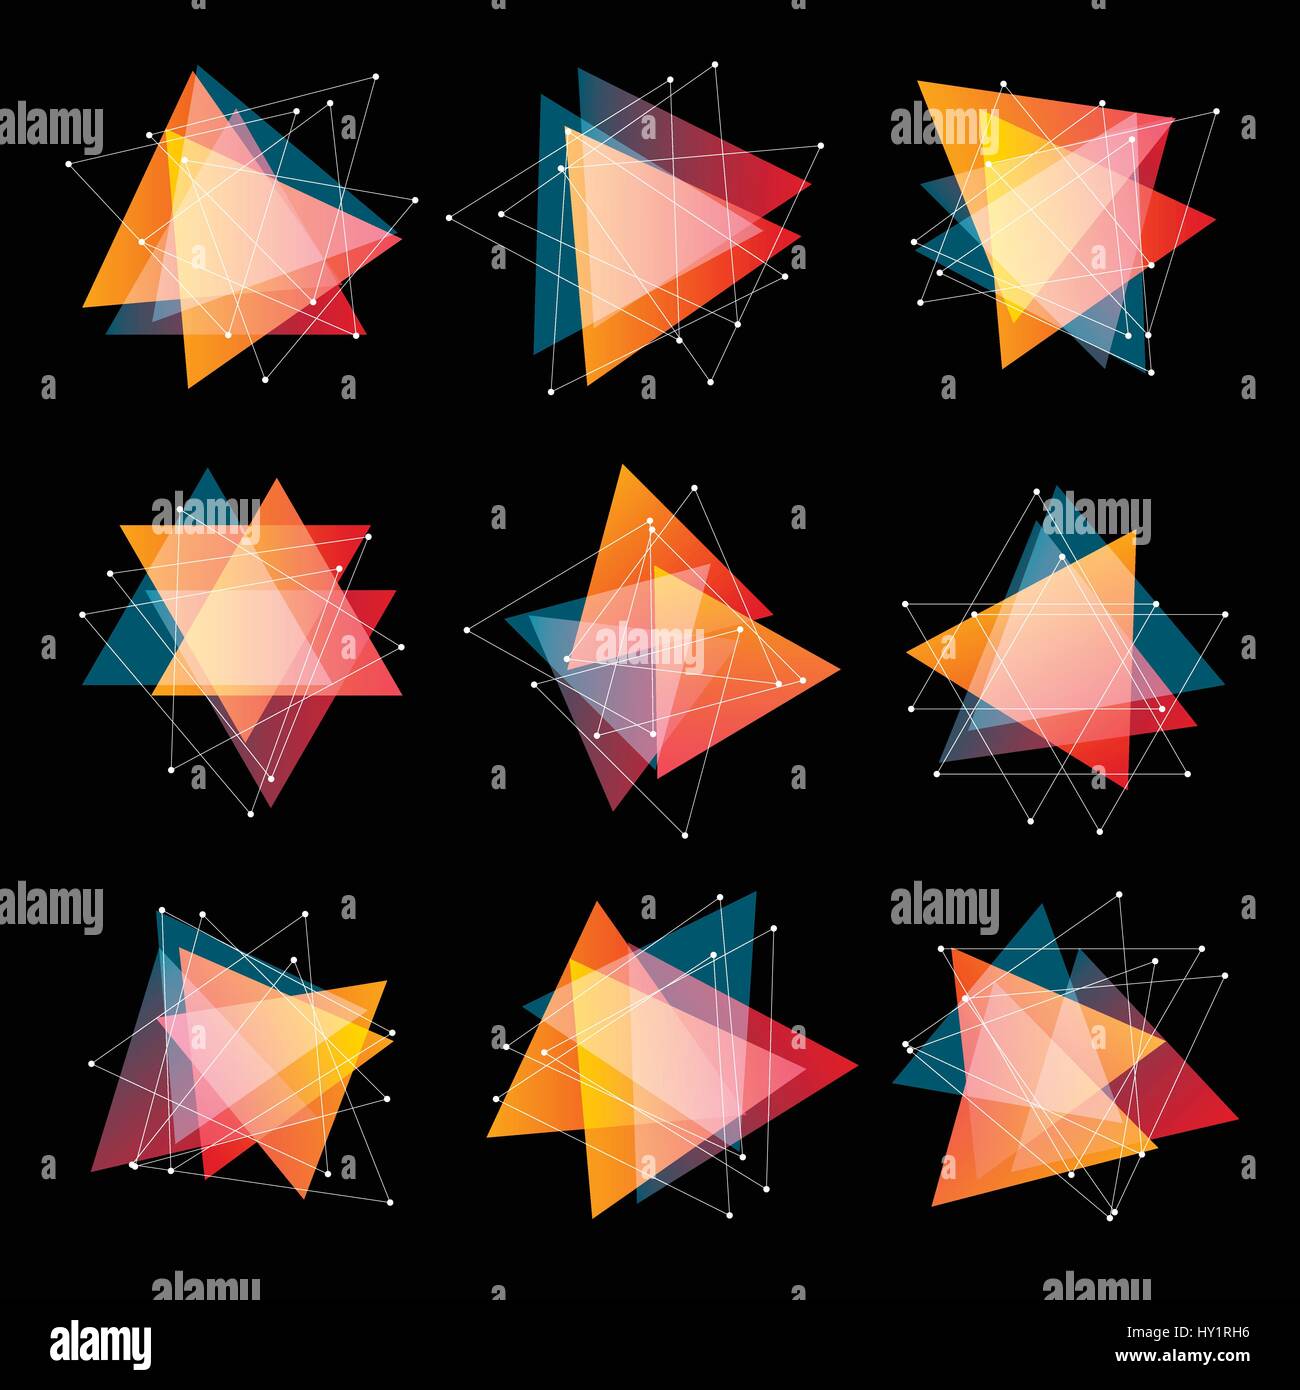 Isolierte abstrakte rosa und orange farbige Dreiecke Logo setzen auf schwarzem Hintergrund, geometrische Dreiecksform Logo der transparente Überlagerungen Sammlung Vektor-illustration Stock Vektor